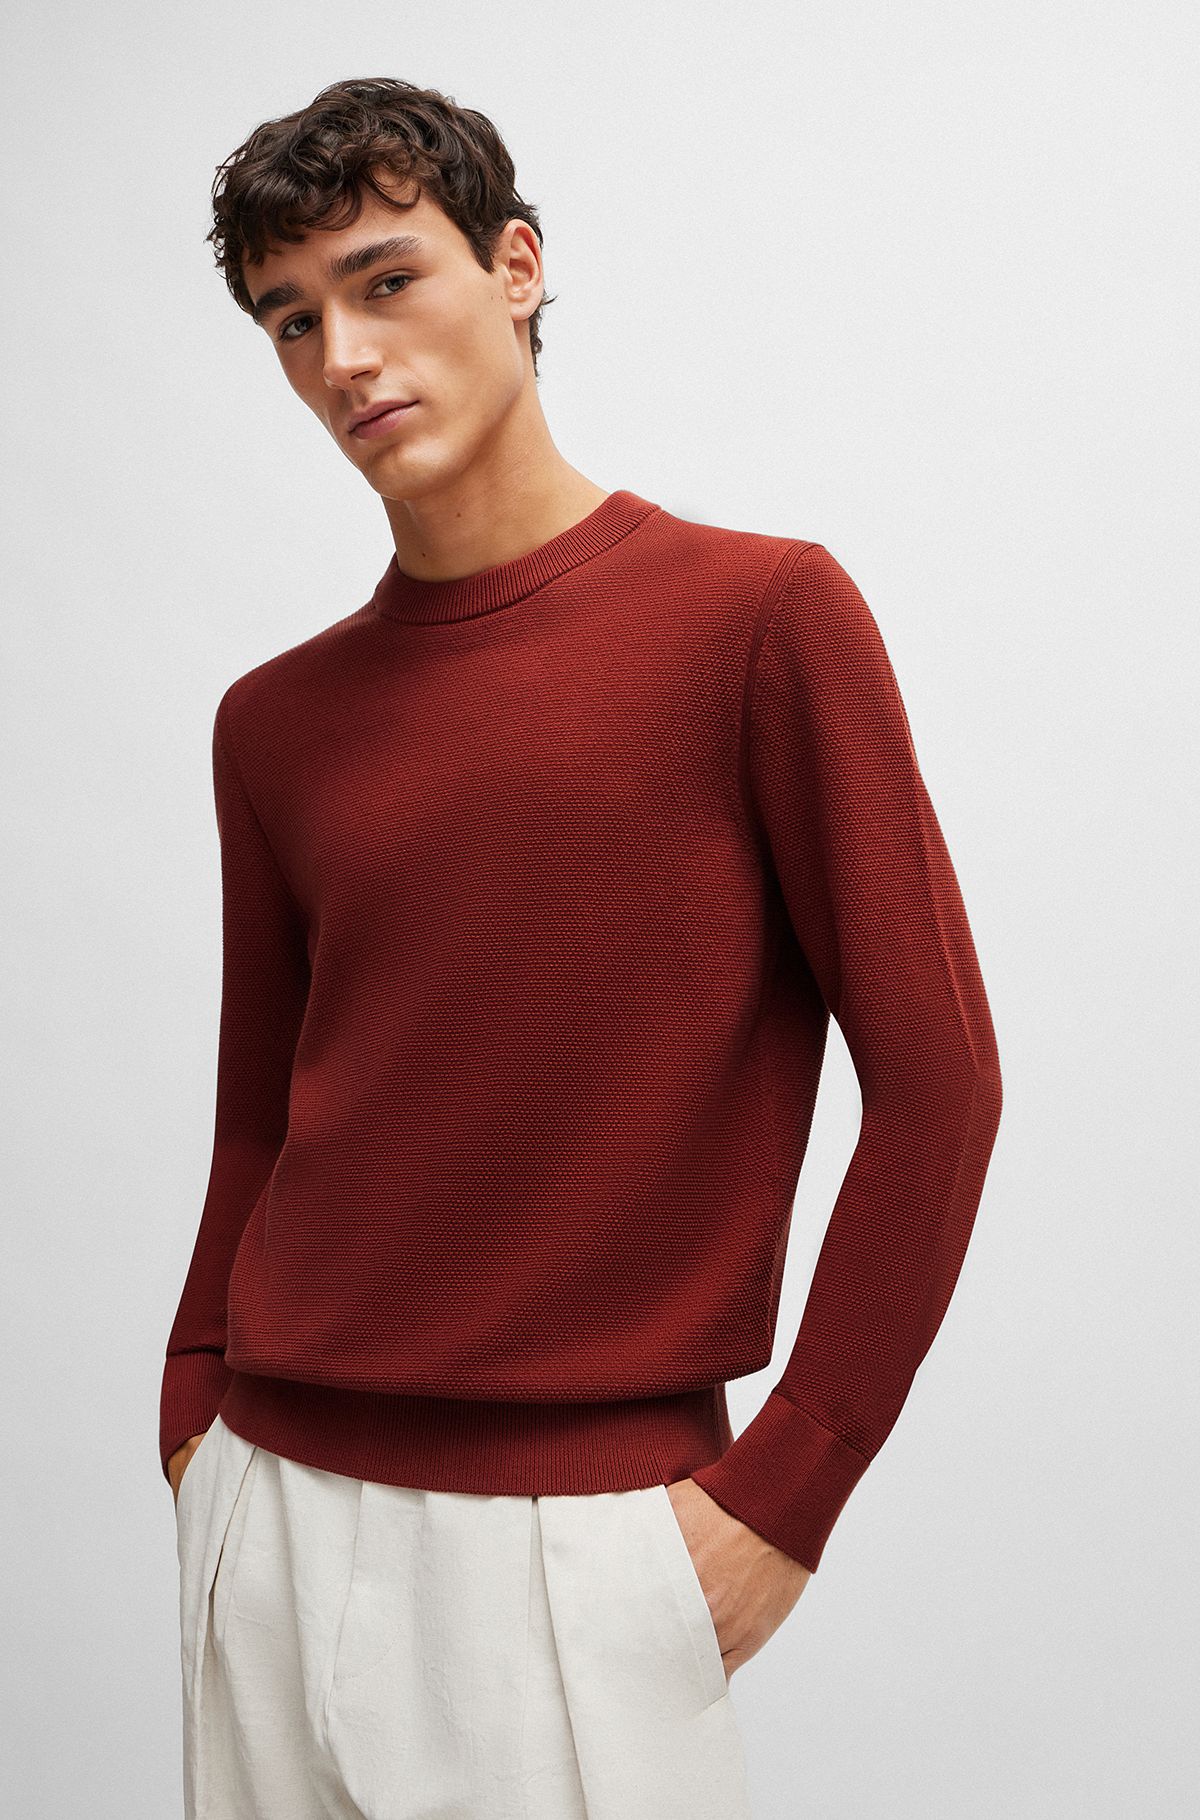 Jersey de algodón con microestructura y cuello redondo, Marrón claro